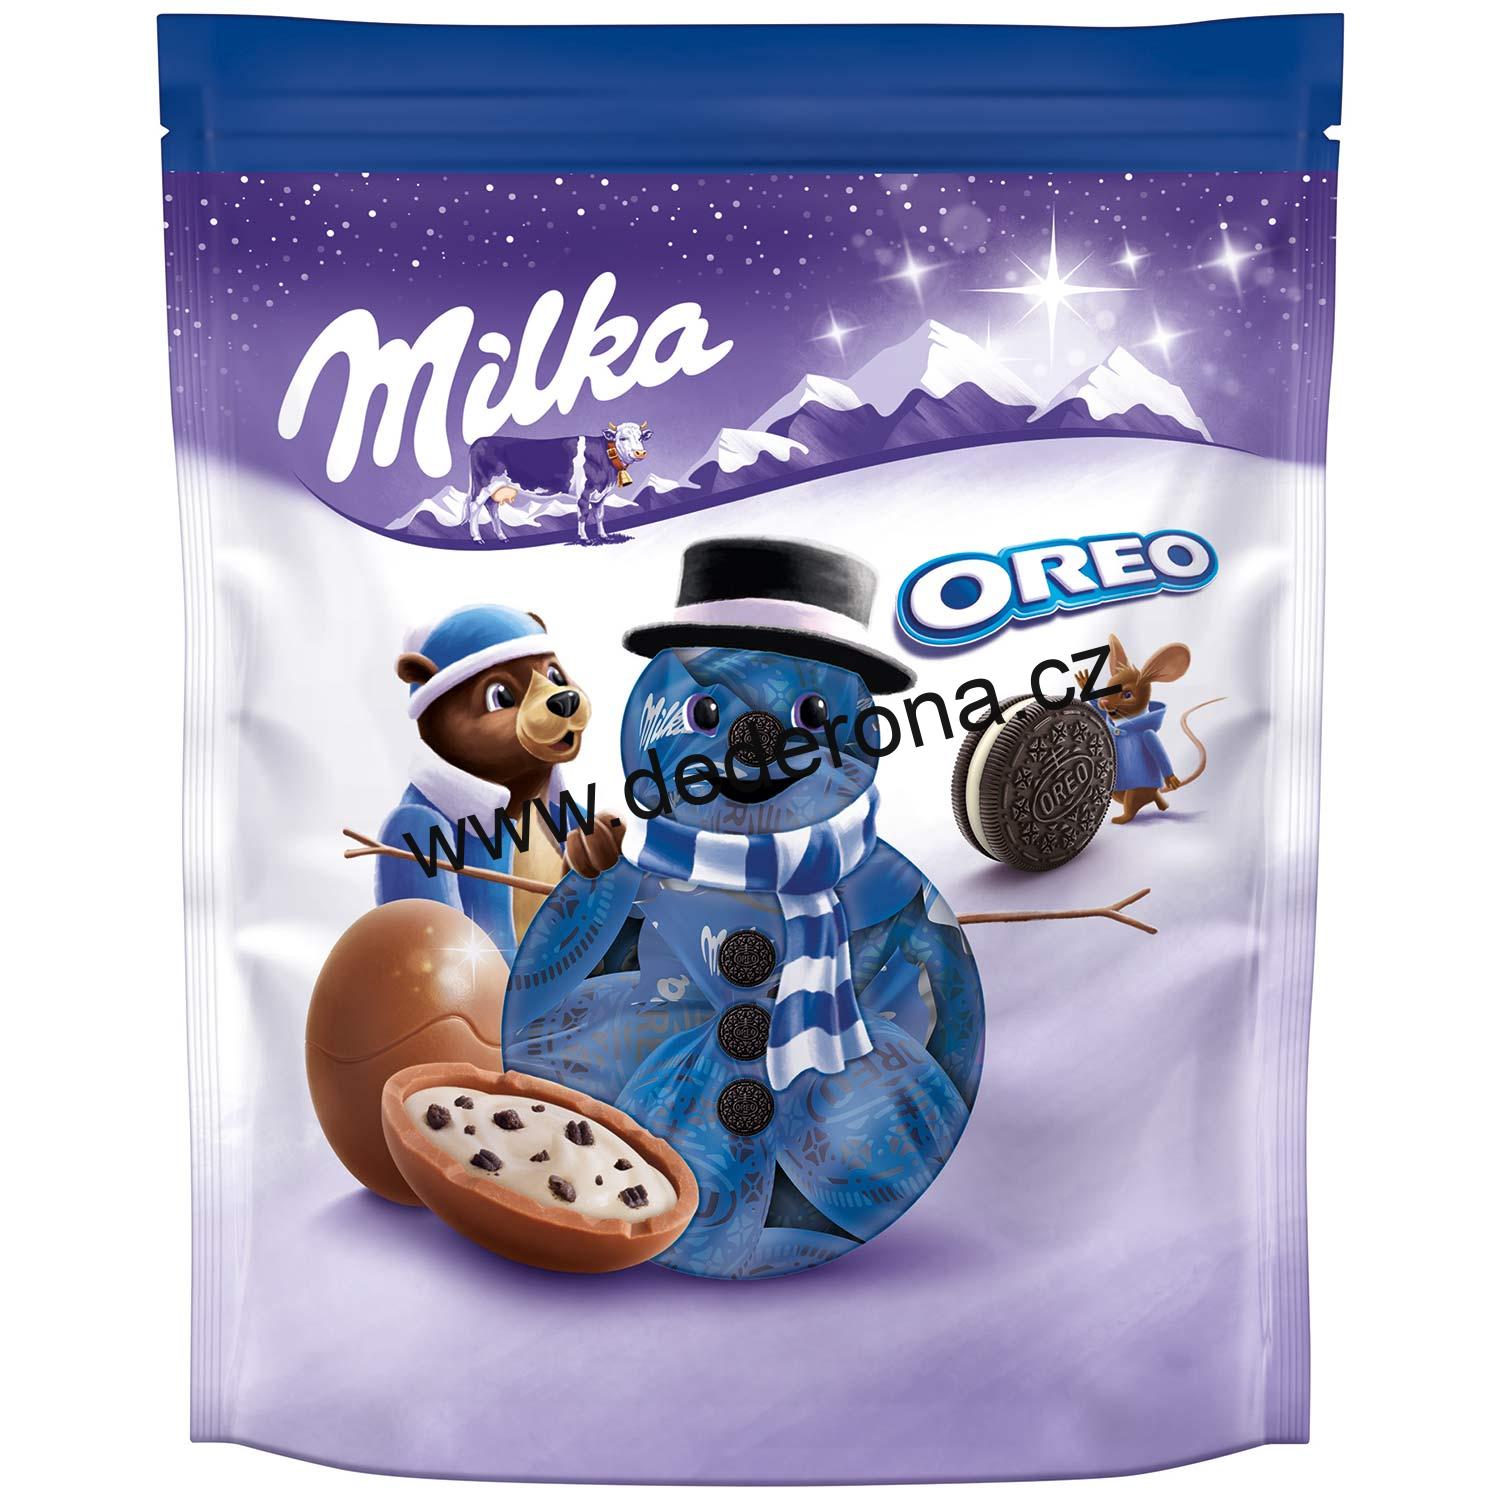 Milka - VÁNOČNÍ ČOKOLÁDOVÉ KULIČKY OREO 86g - Německo!